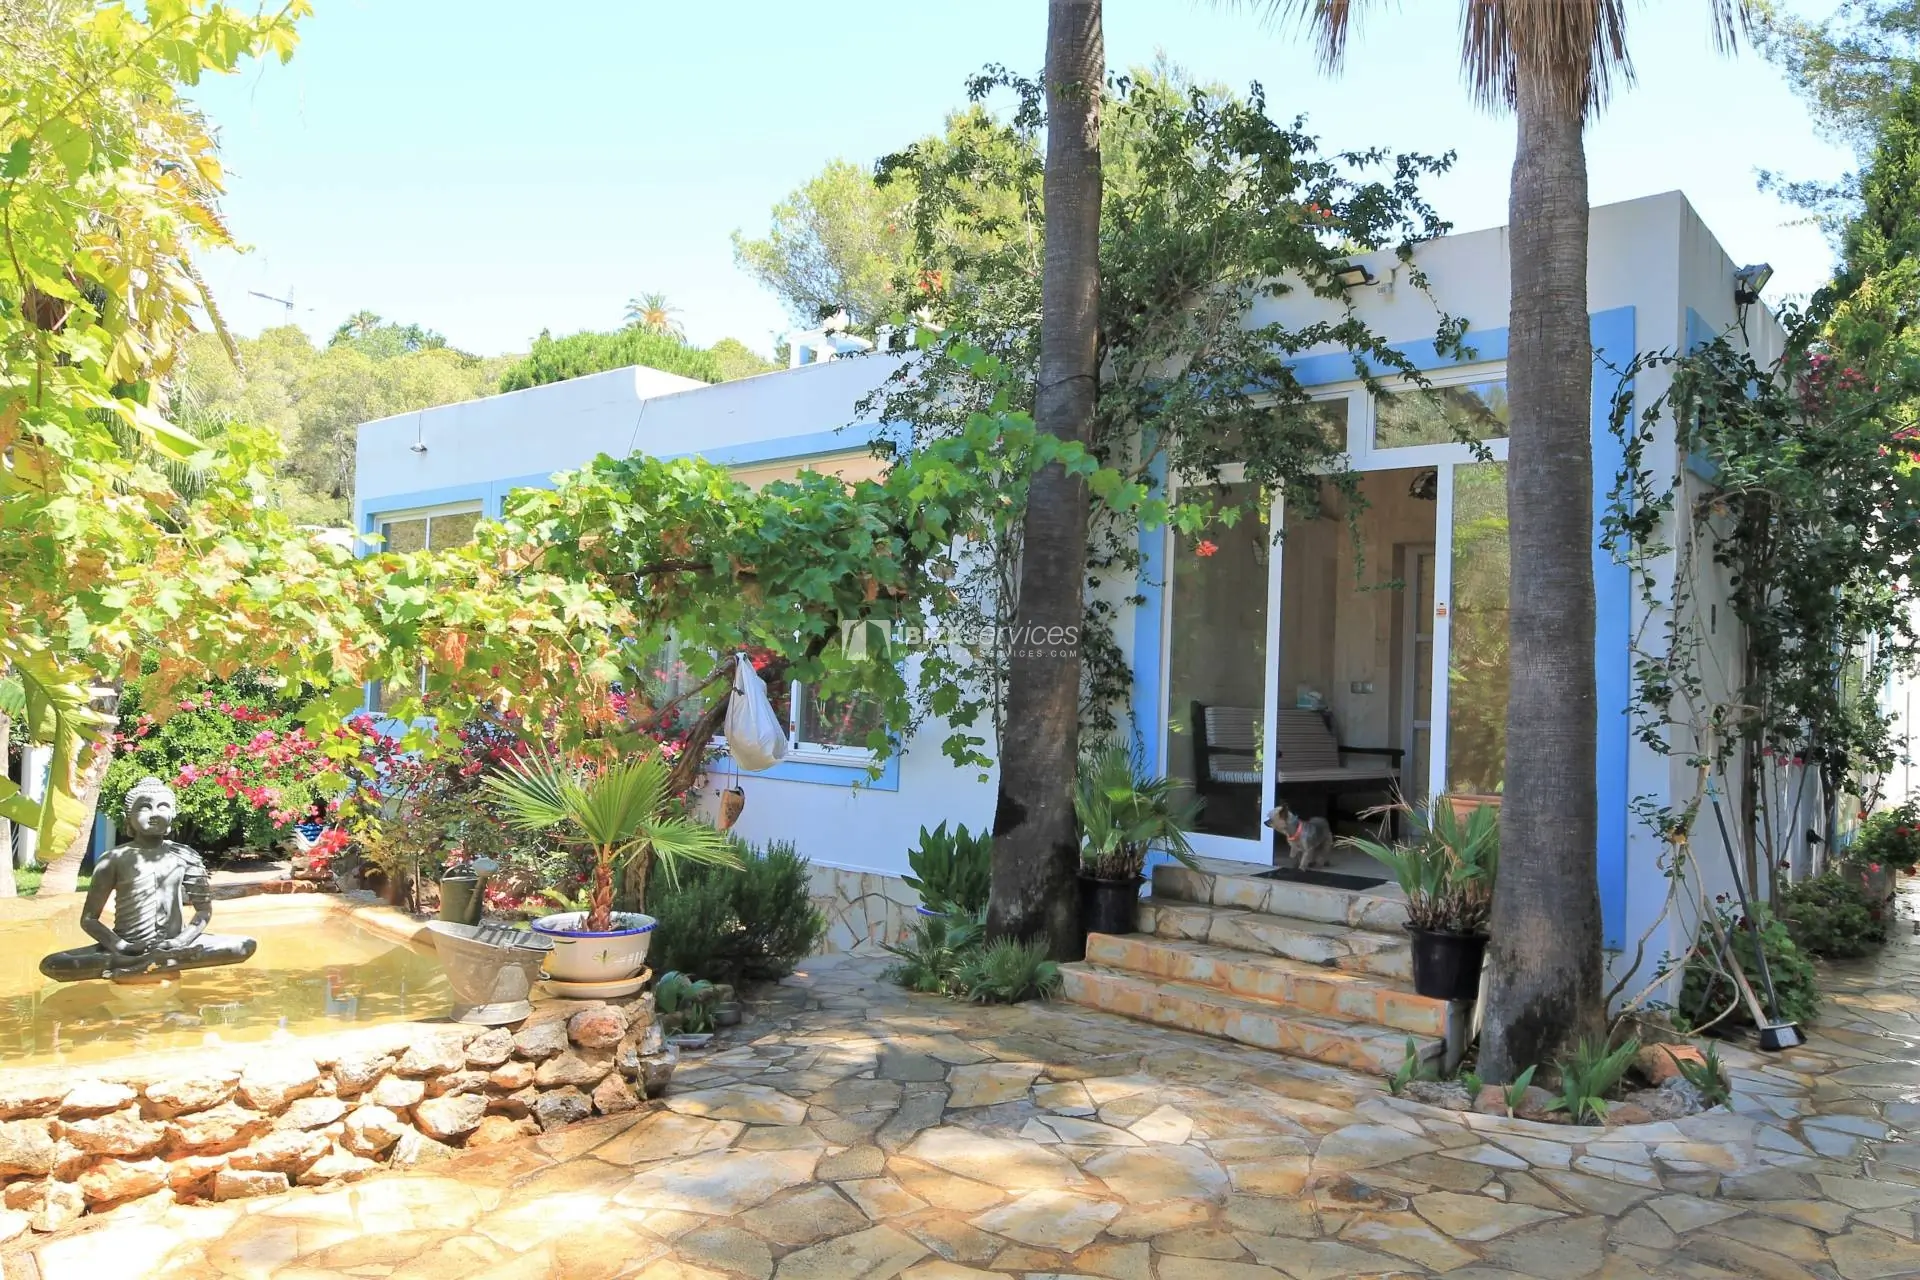 Villa mit 6 Schlafzimmern in der Nähe von Ibiza-Stadt